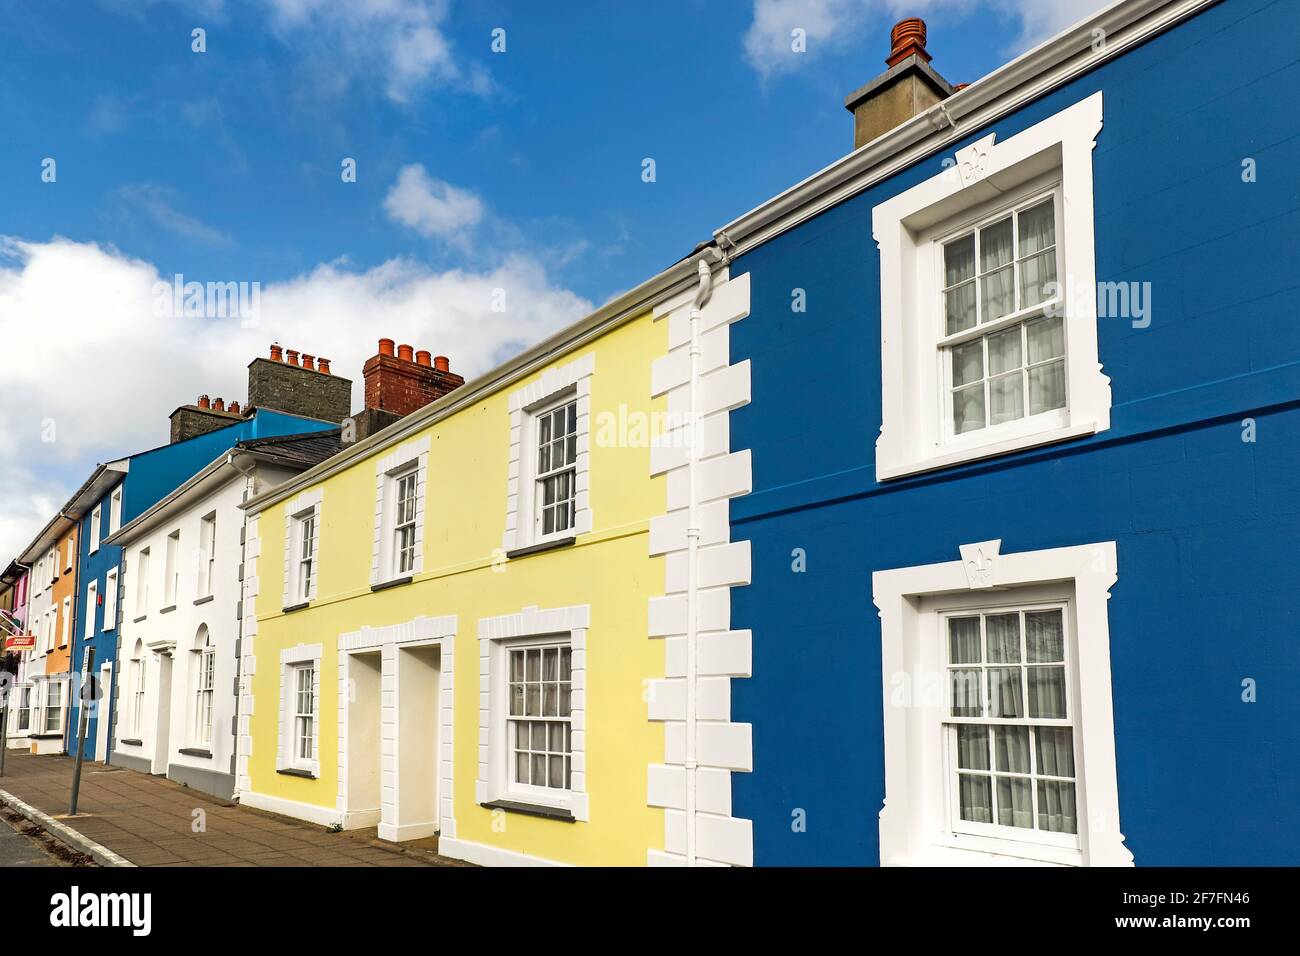 Certaines des nombreuses maisons colorées style régence près du port dans cette ville côtière populaire, Aberaeron, Ceredigion, pays de Galles, Royaume-Uni, Europe Banque D'Images